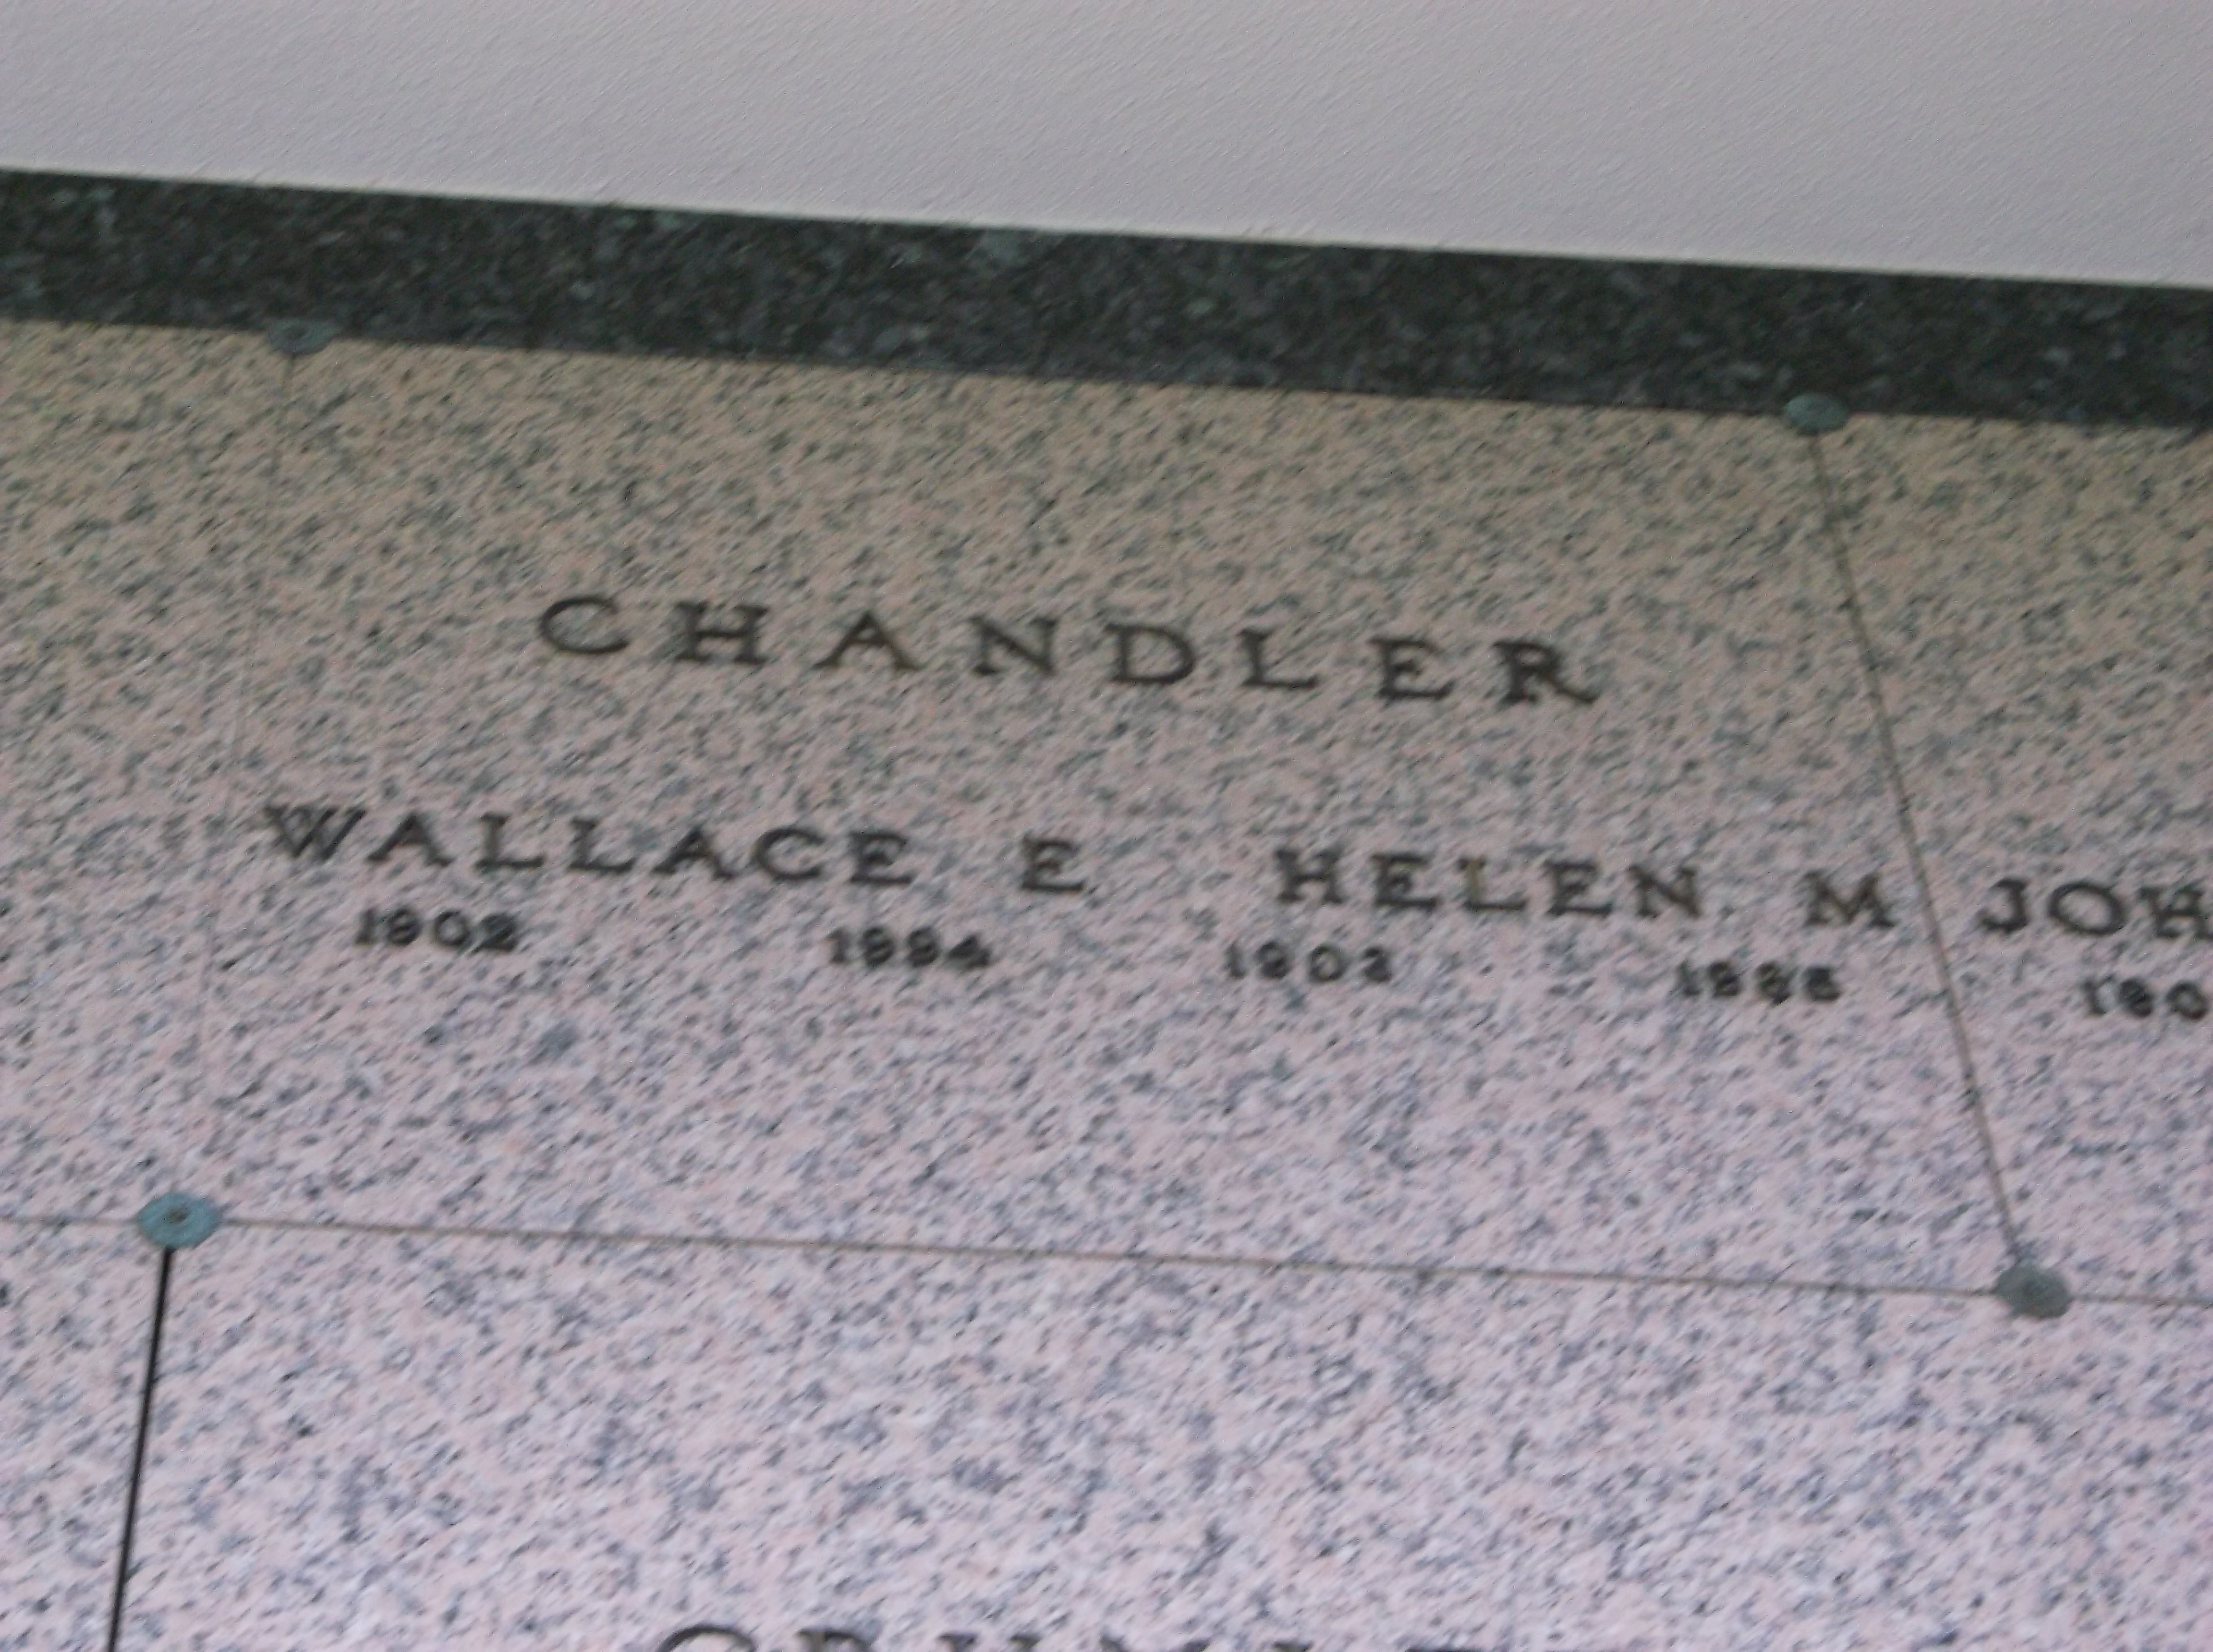 Helen M Chandler